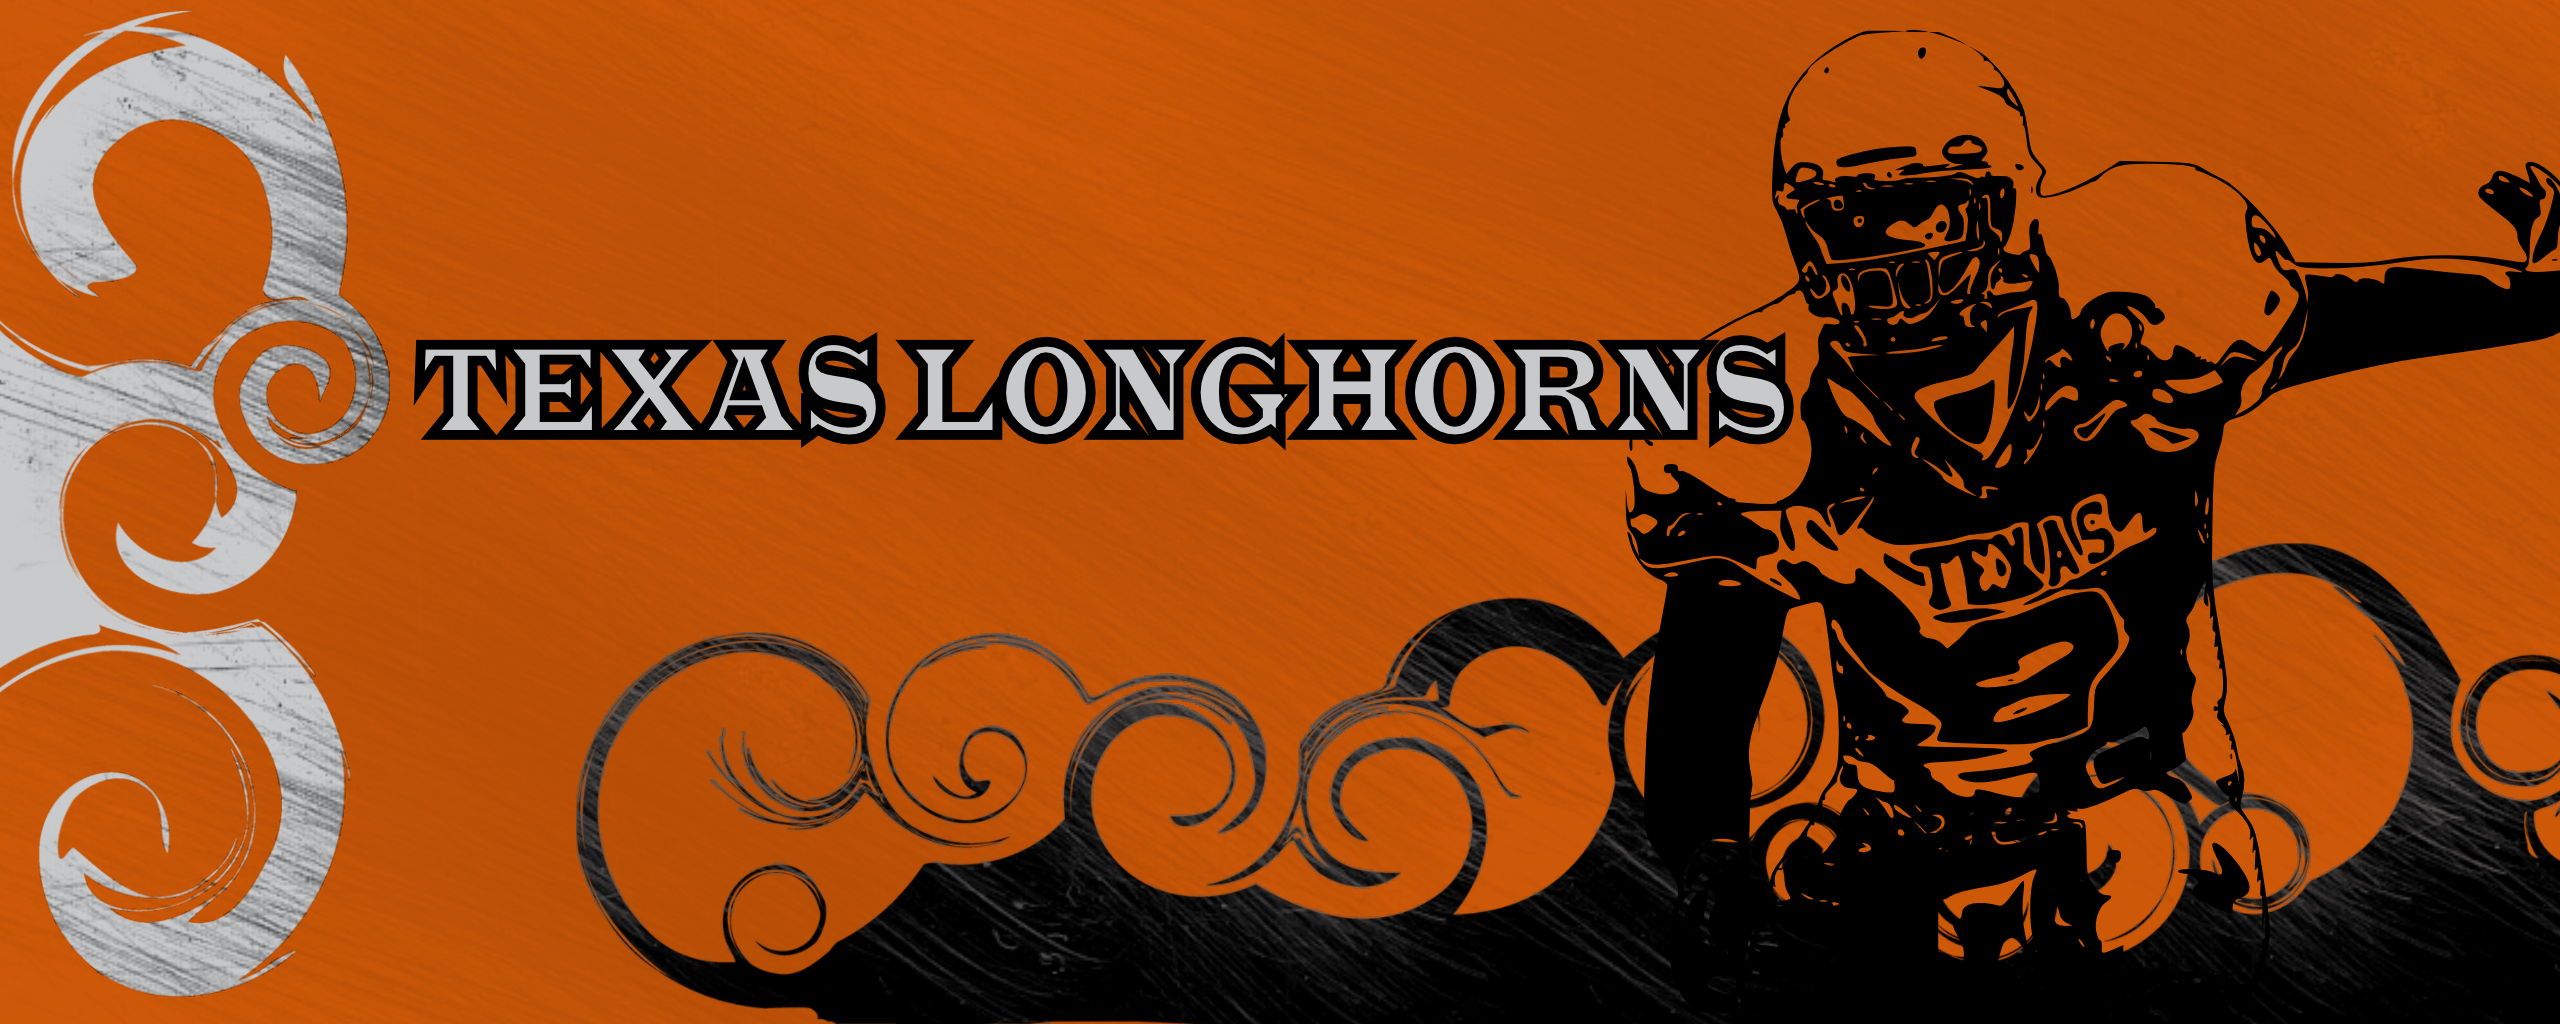 Texas Longhorns Wallpaper By Thunderbird Bln Customization